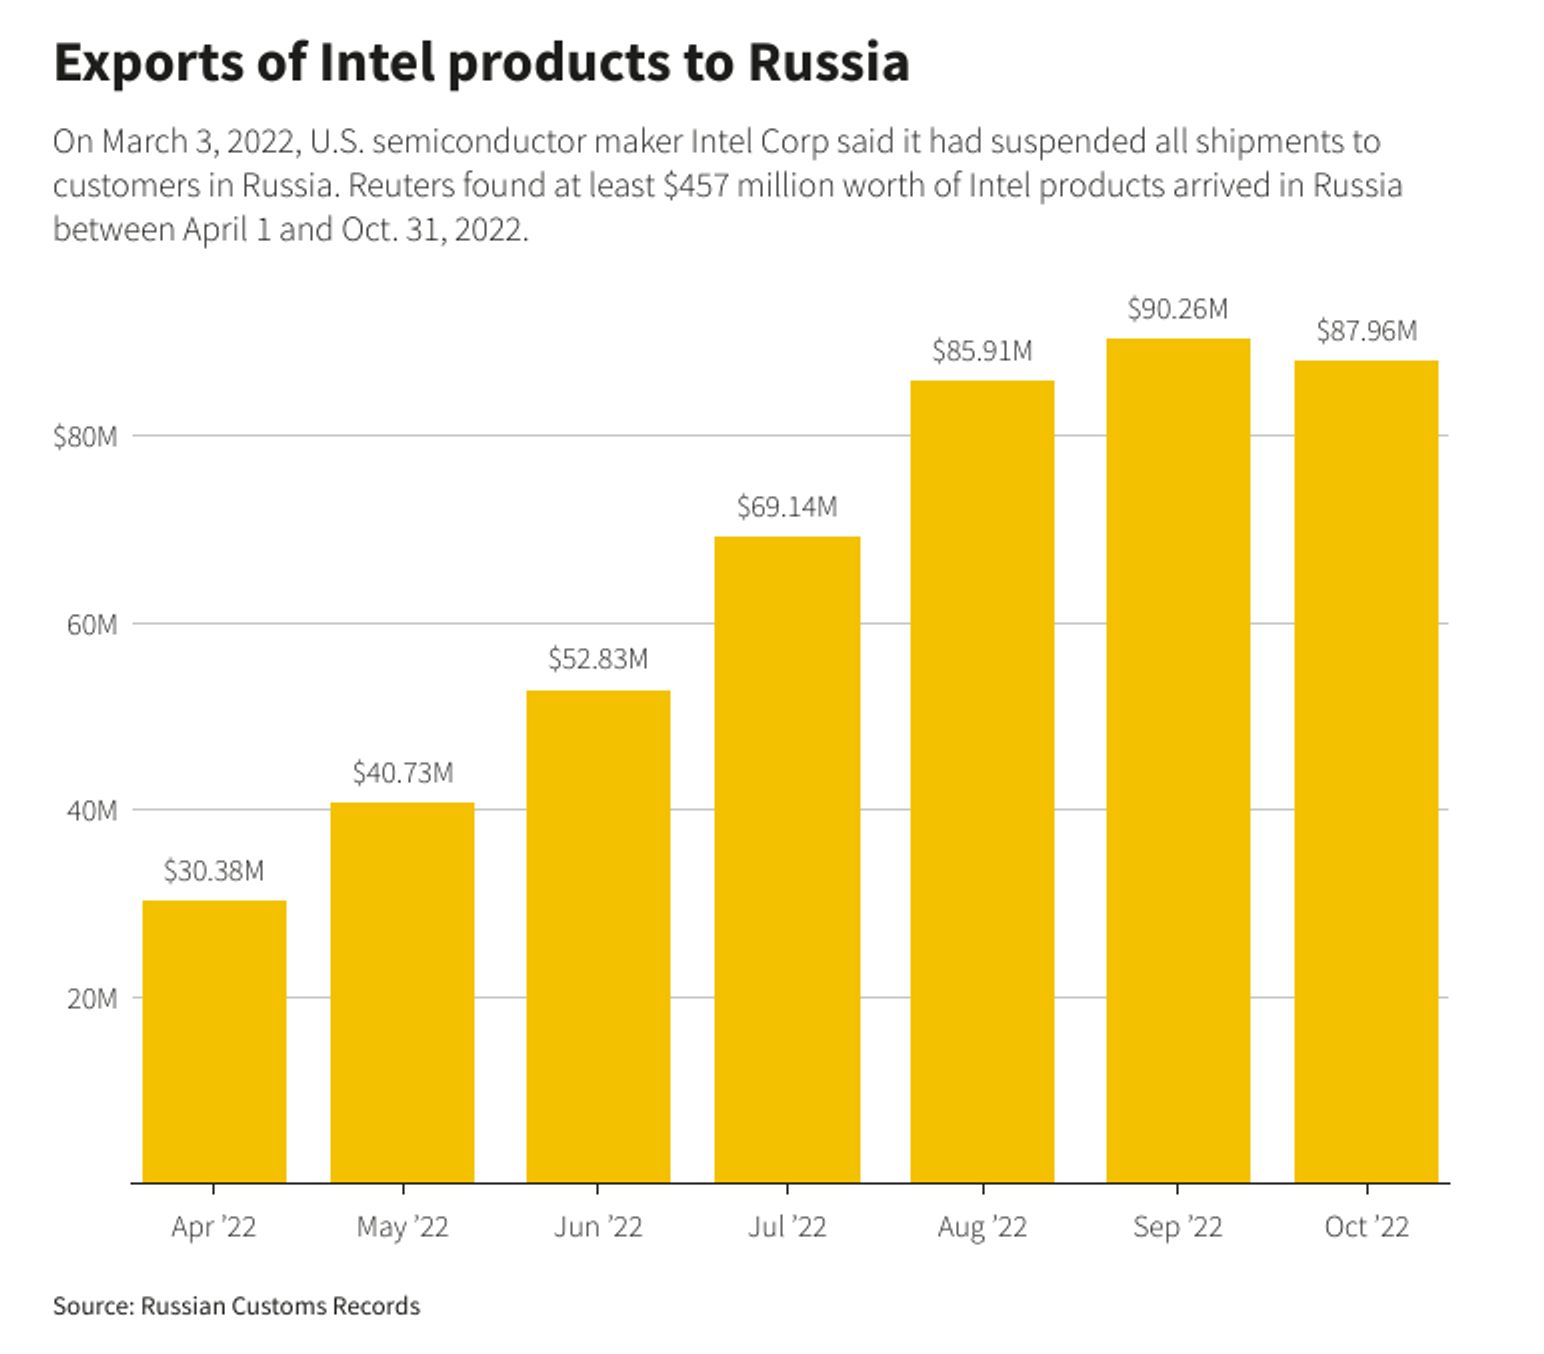 Импорт продукции Intel в Россию с апреля по октябрь 2022 года